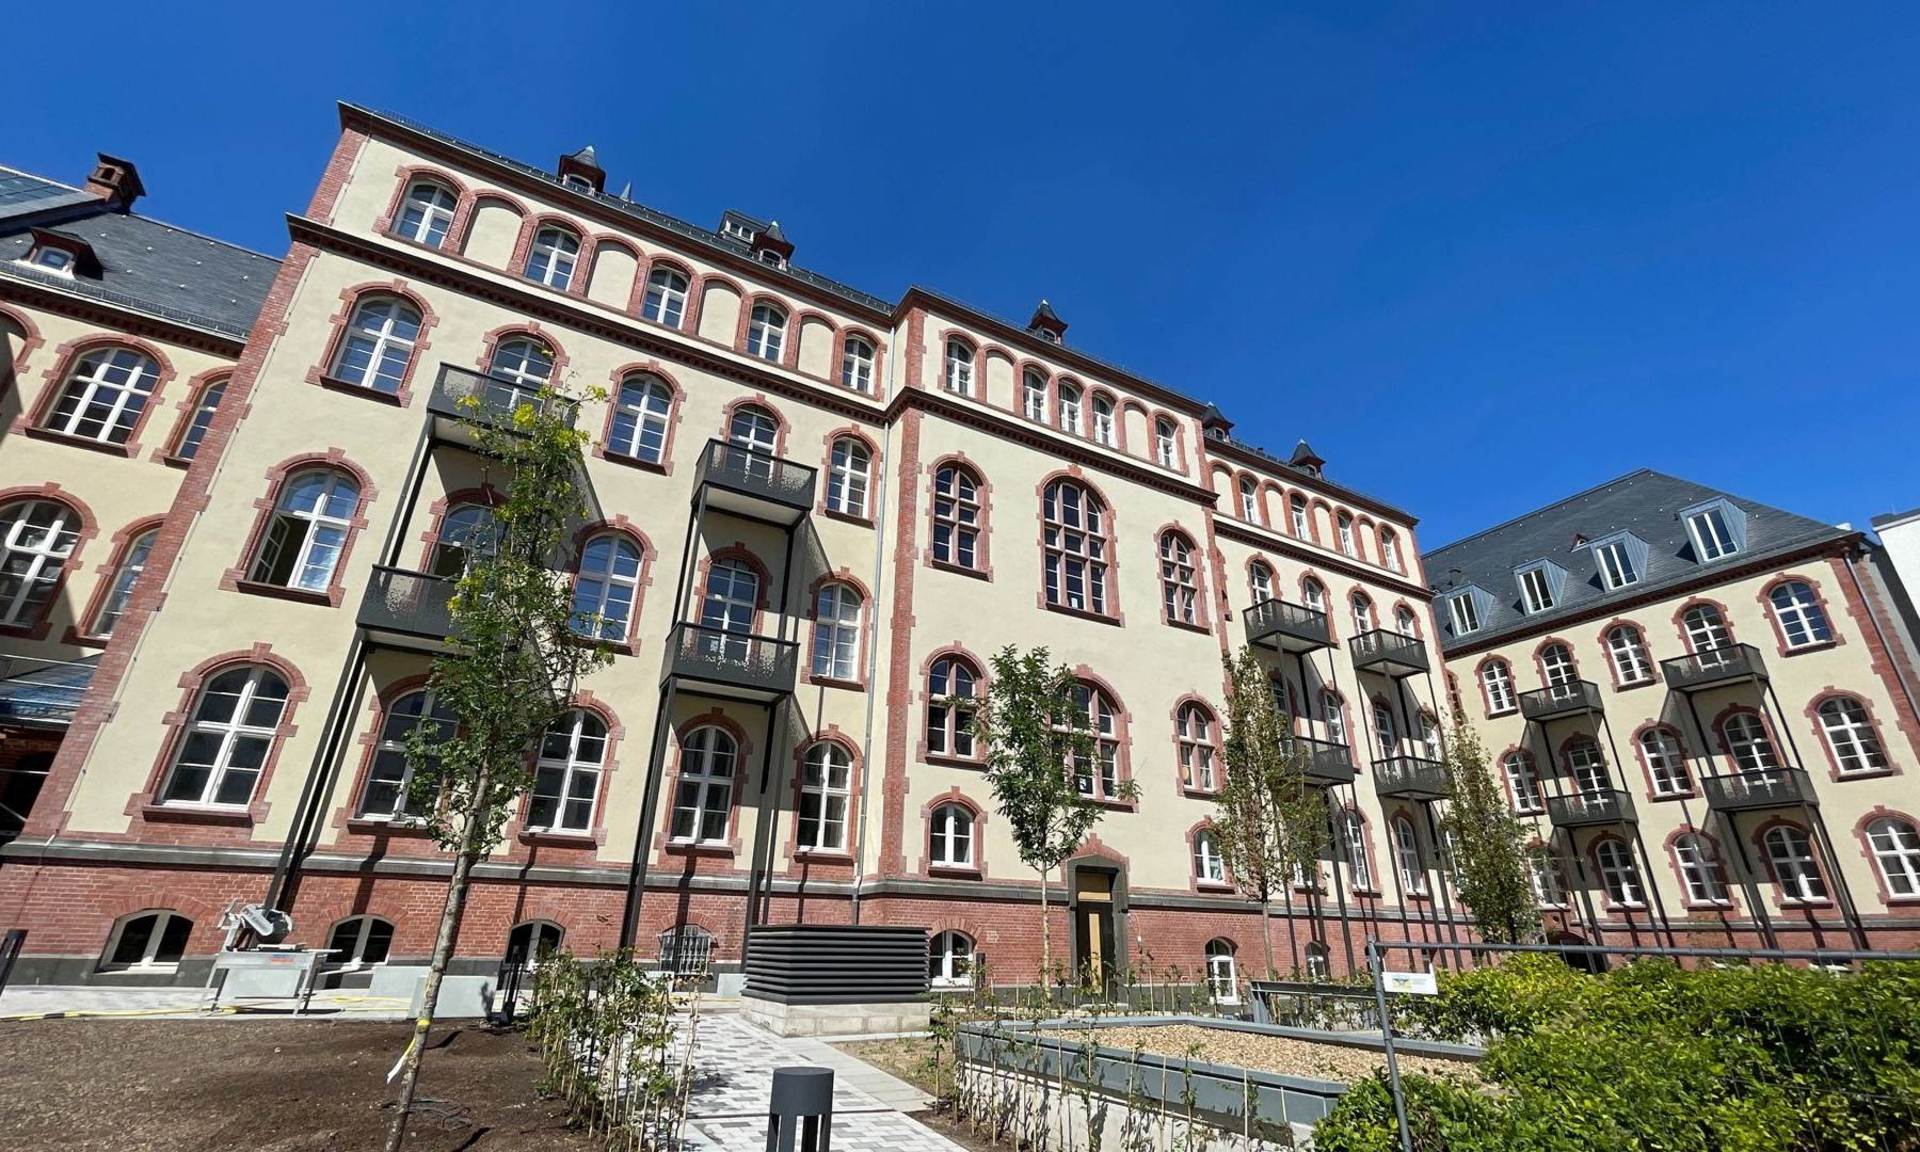 Blick von vorne auf das Alte Gericht in Wiesbaden